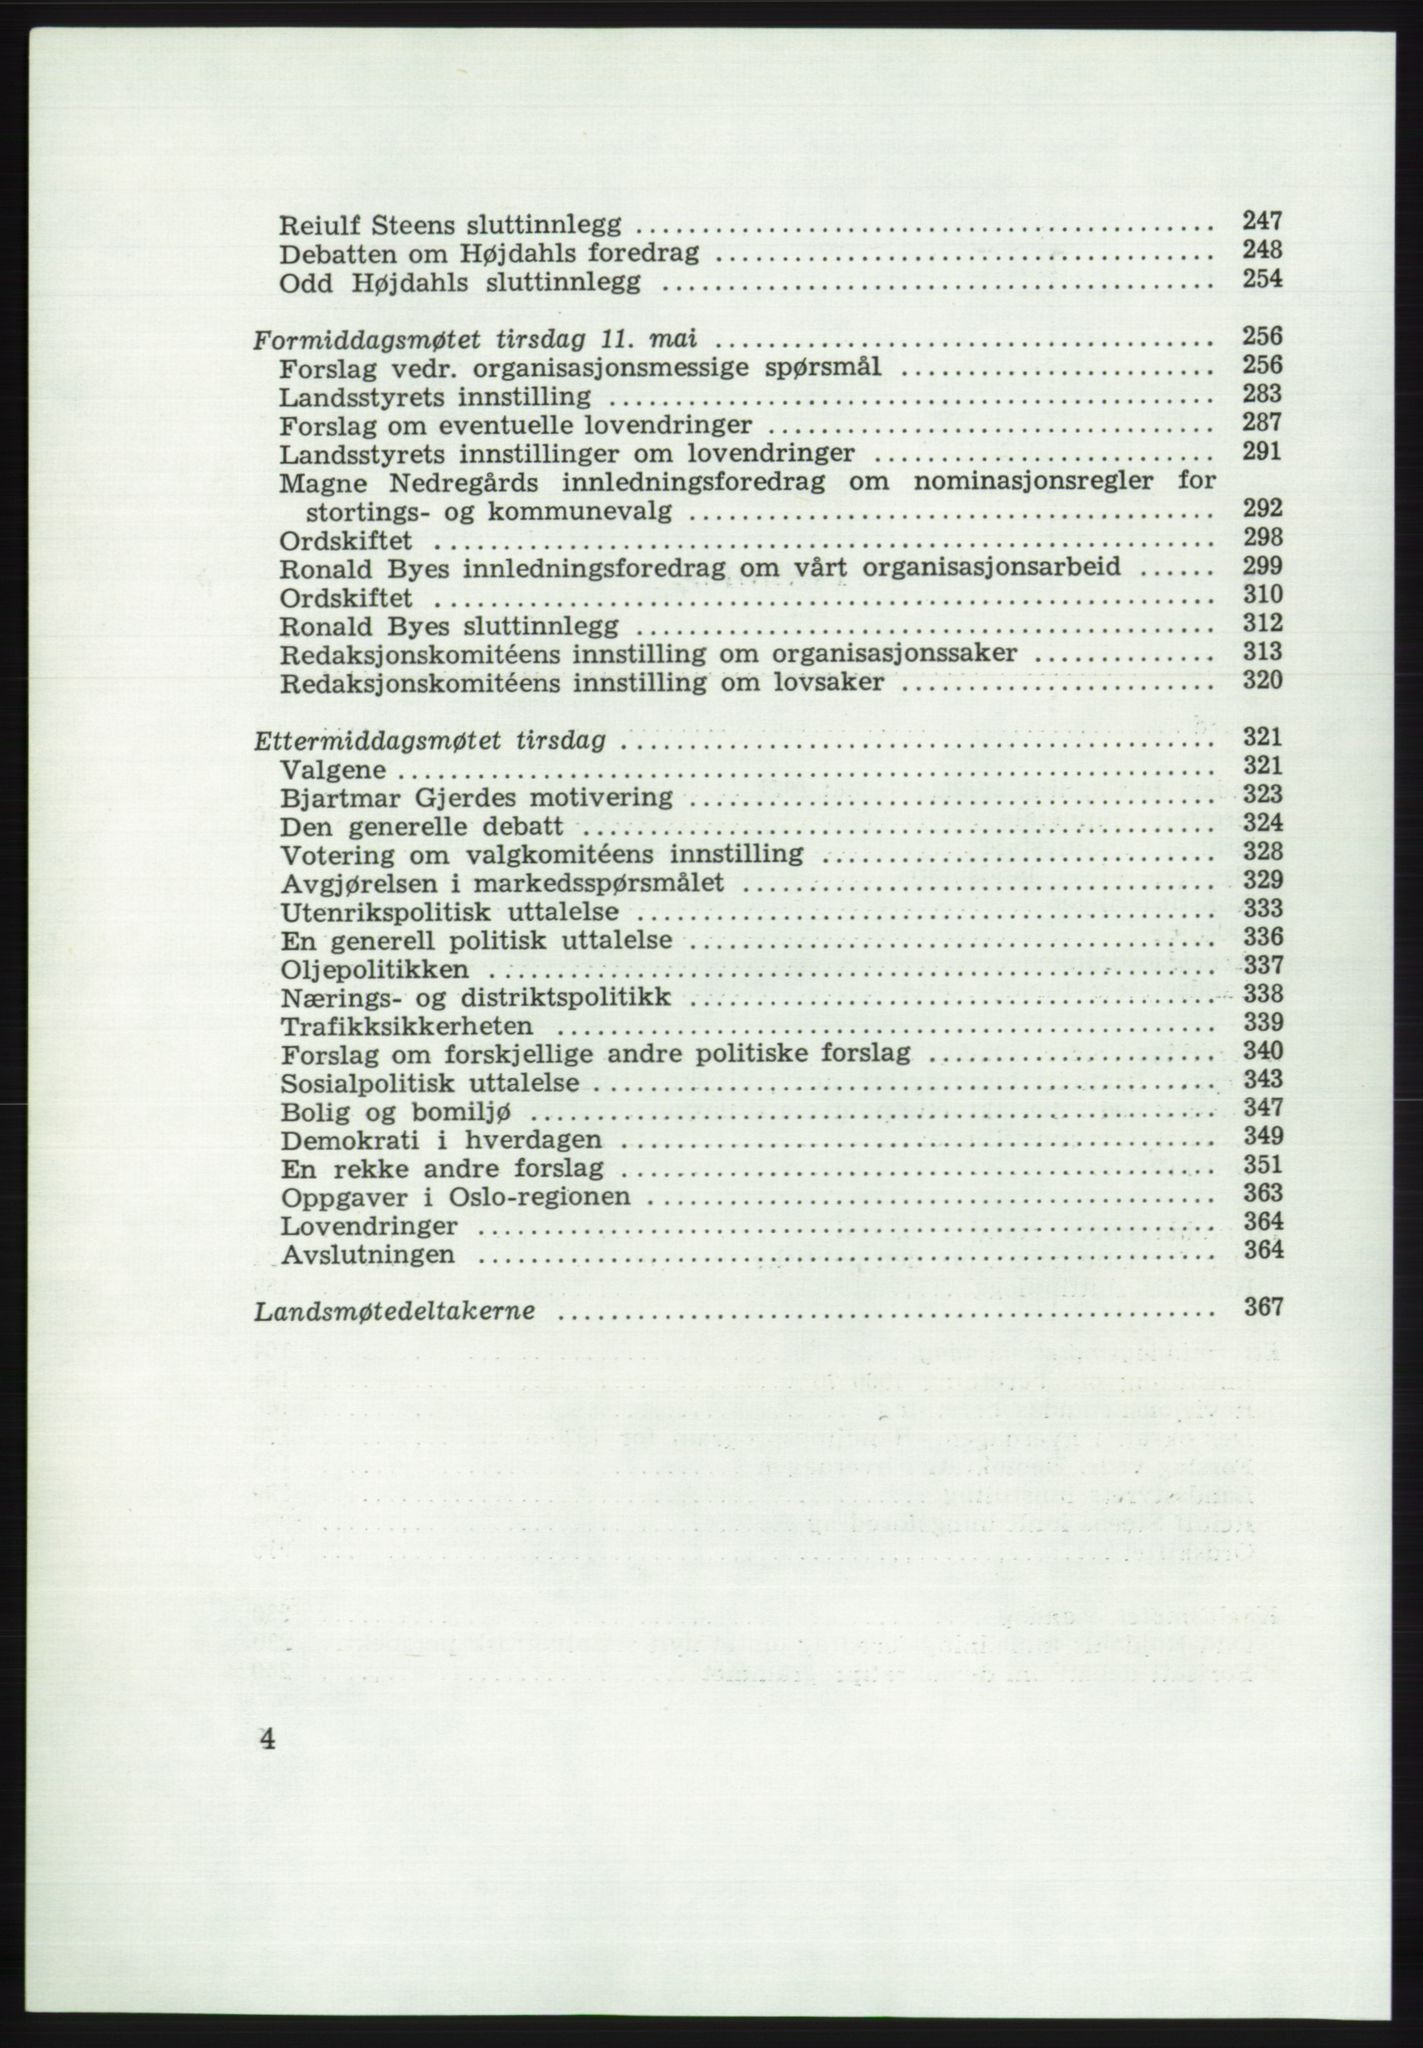 Det norske Arbeiderparti - publikasjoner, AAB/-/-/-: Protokoll over forhandlingene på det 43. ordinære landsmøte 9.-11. mai 1971 i Oslo, 1971, p. 4